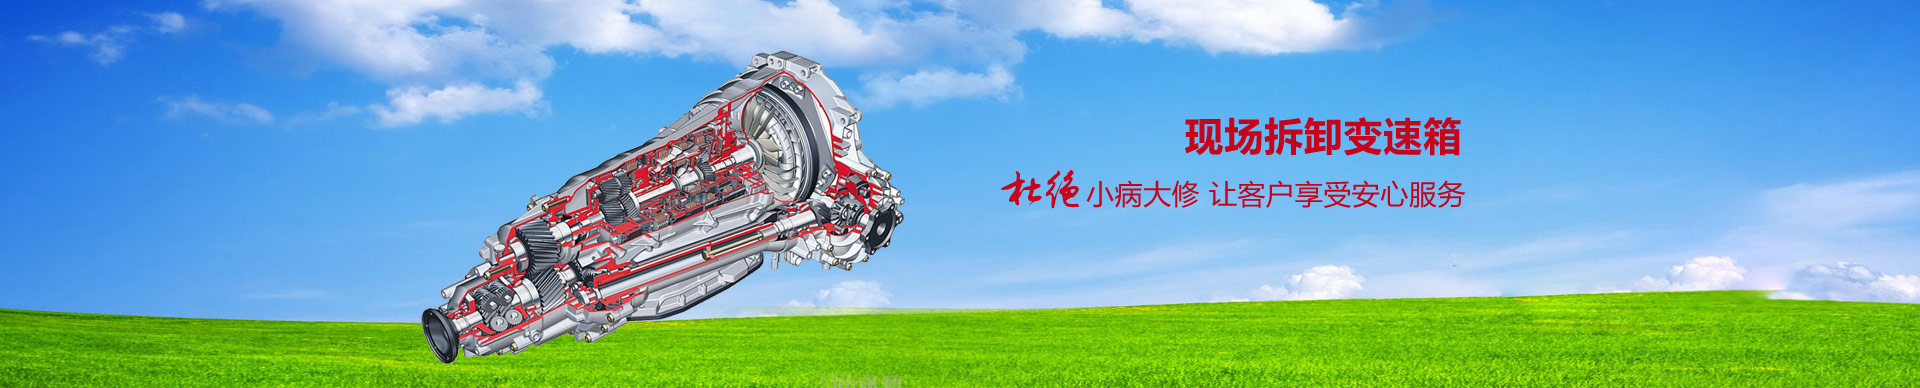 上海景邦汽车技术服务有限公司